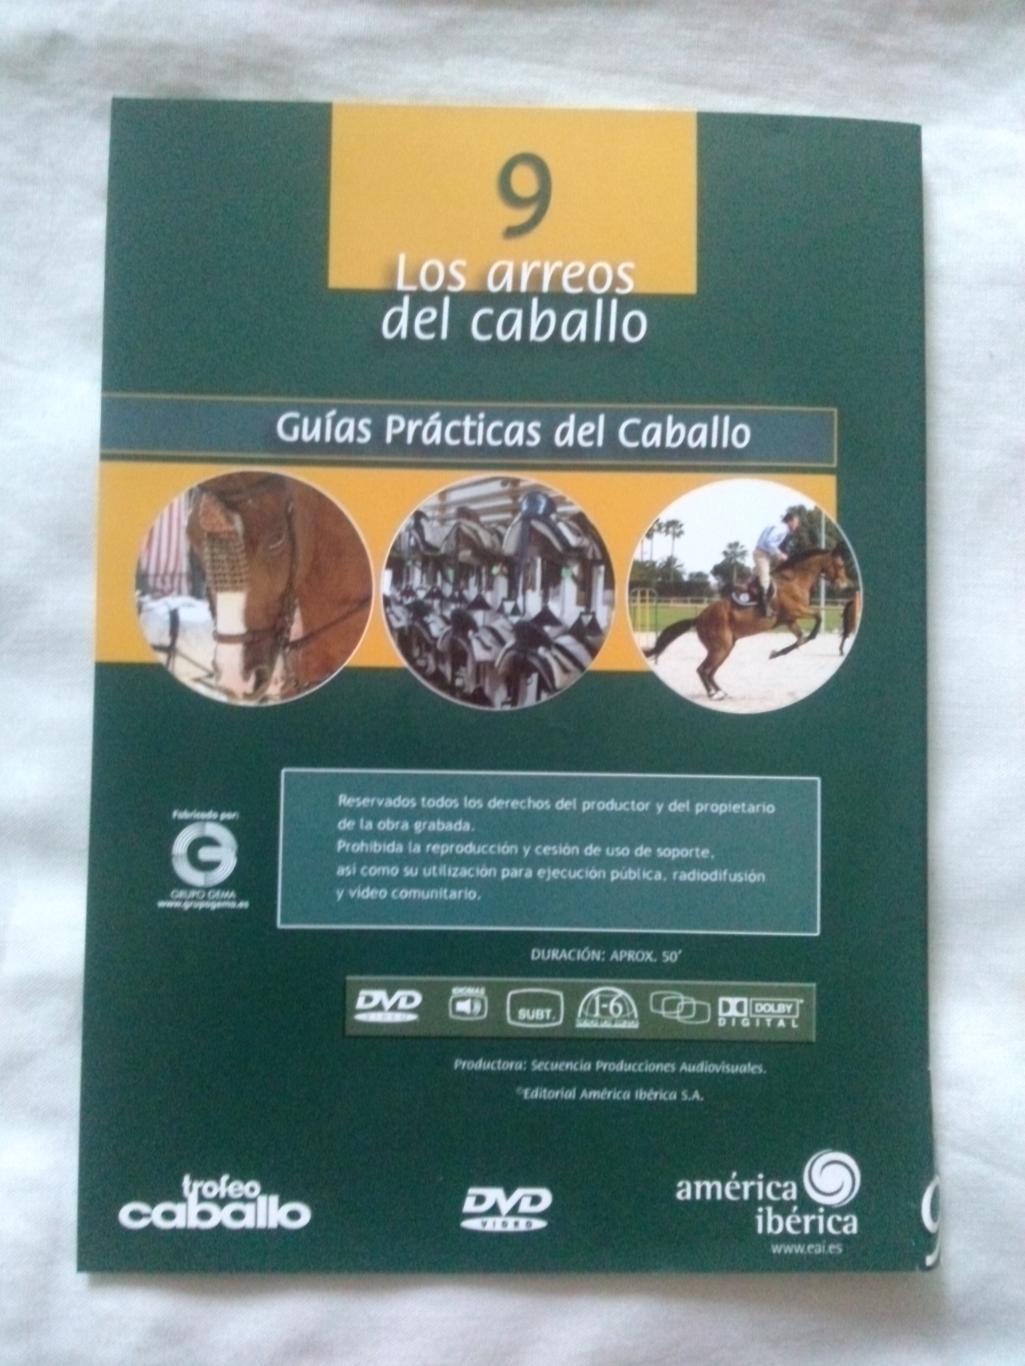 DVD Выездка и воспитание лошадей (на испанском языке) Спорт (новый) Лошади 1